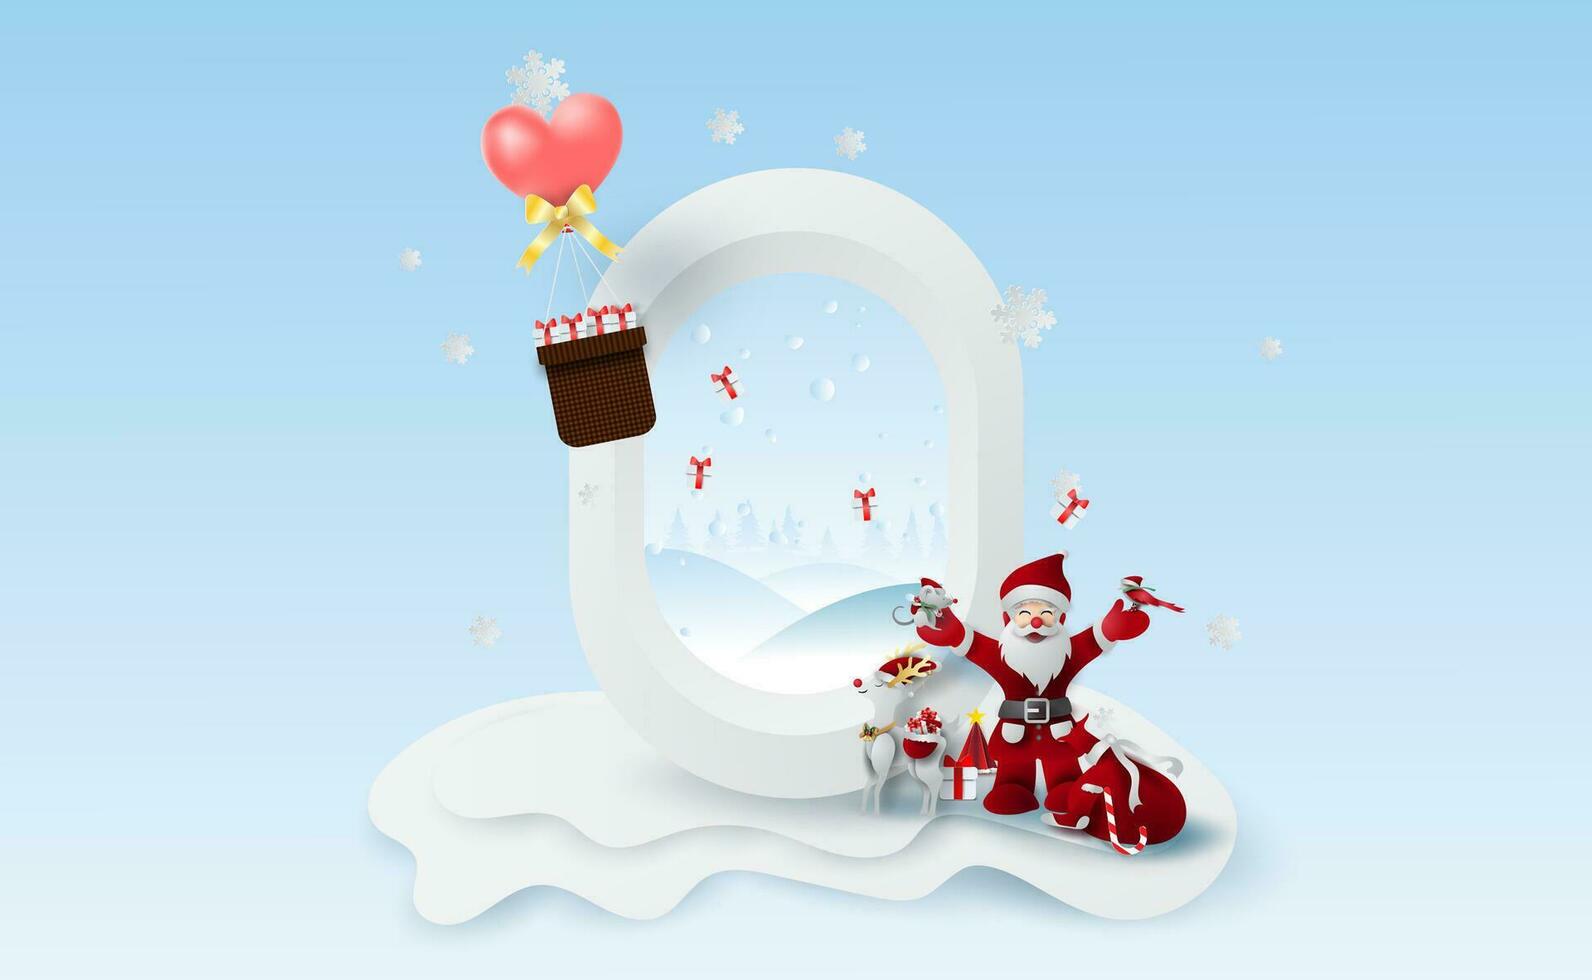 landskap glad jul och ny år på högtider ballong hjärta med vinter- snö säsong.kreativ snögubbe santa claus av gåva låda, fågel och råtta papper skära och hantverk för fönster flygplan concept.vector. vektor